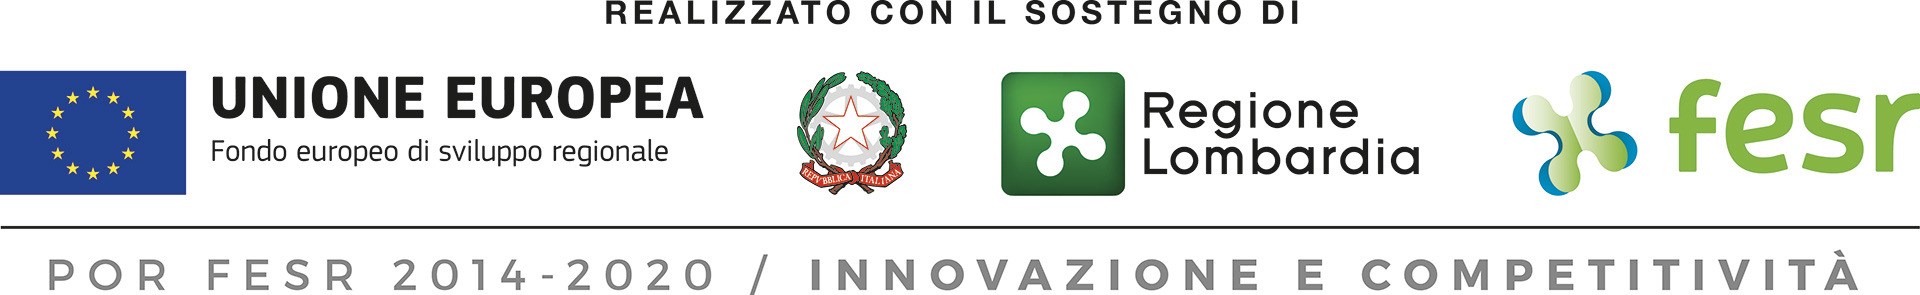 Regione Lombardia: progetto di promozione della competitività delle piccole e medie imprese